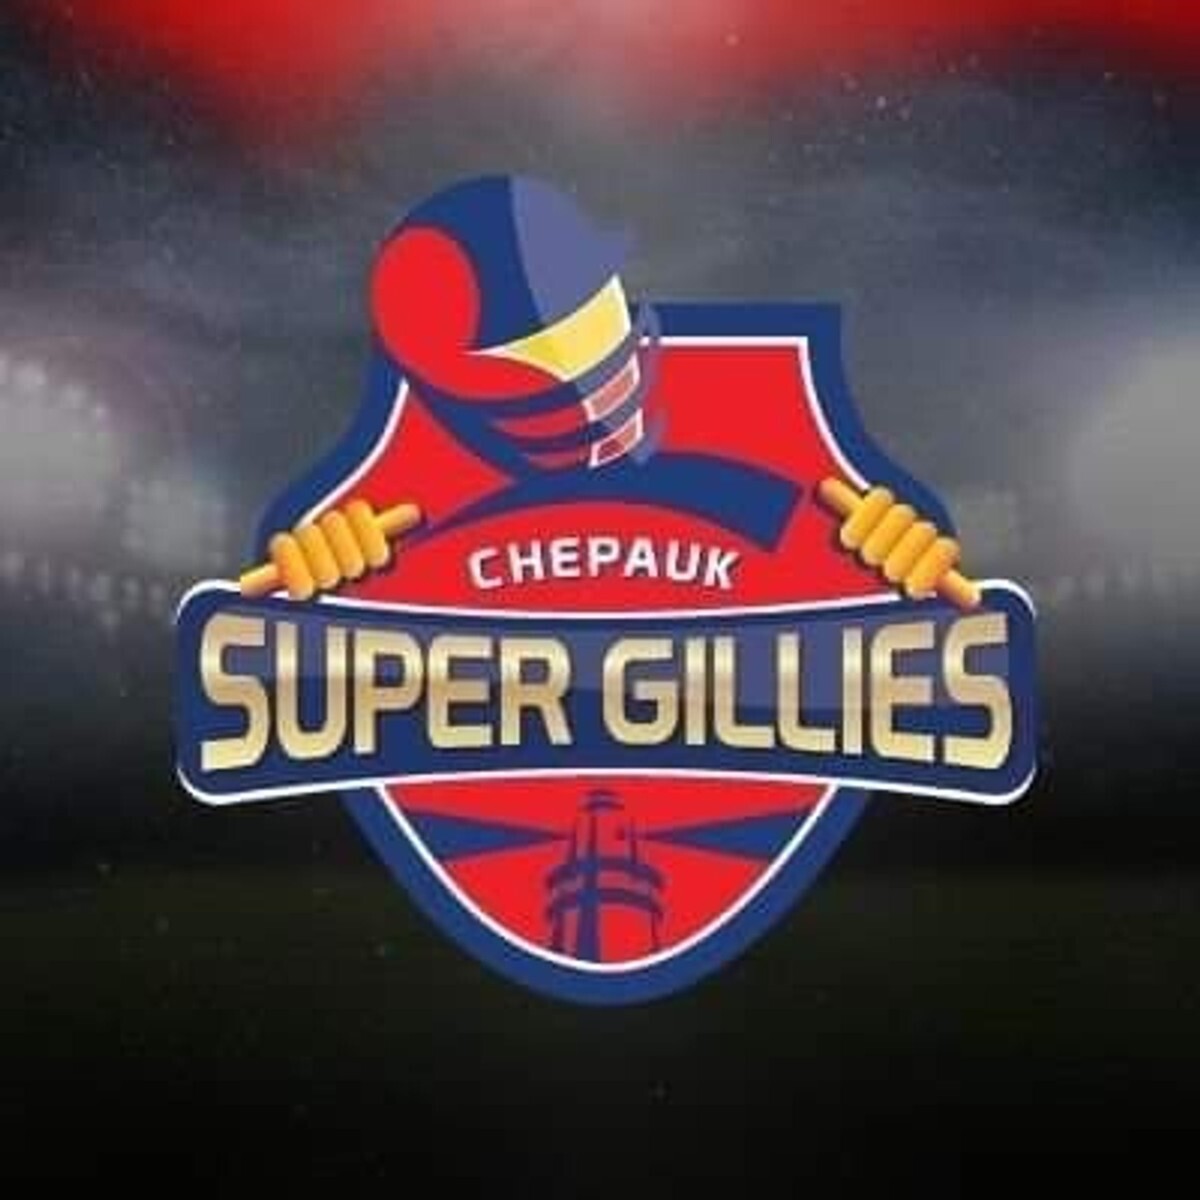 Chepauk Super Gillies photo